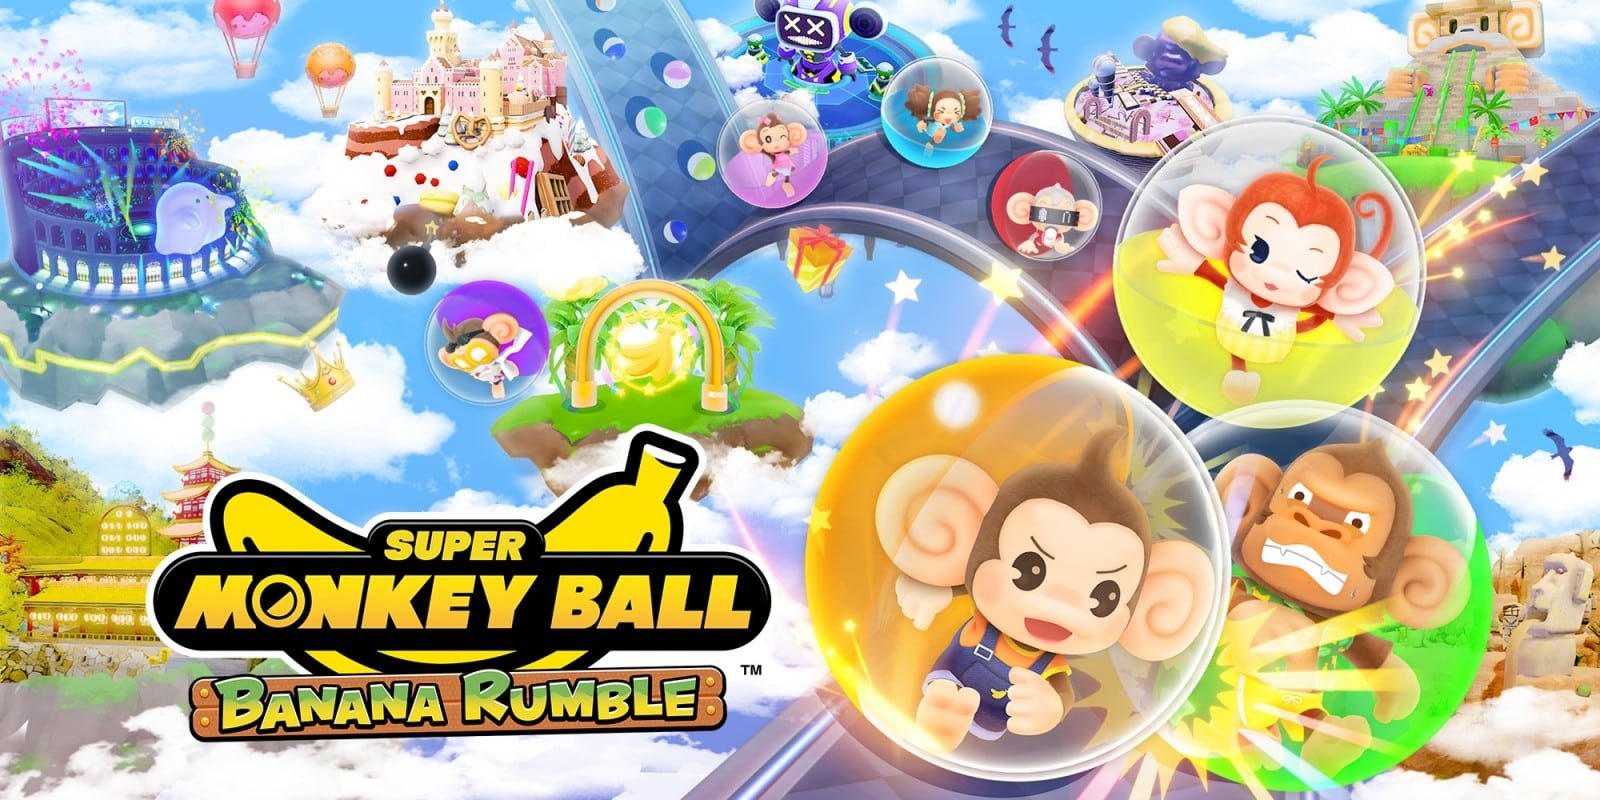 Super Monkey Ball Banana Rumble : une vidéo révèle le mode aventure